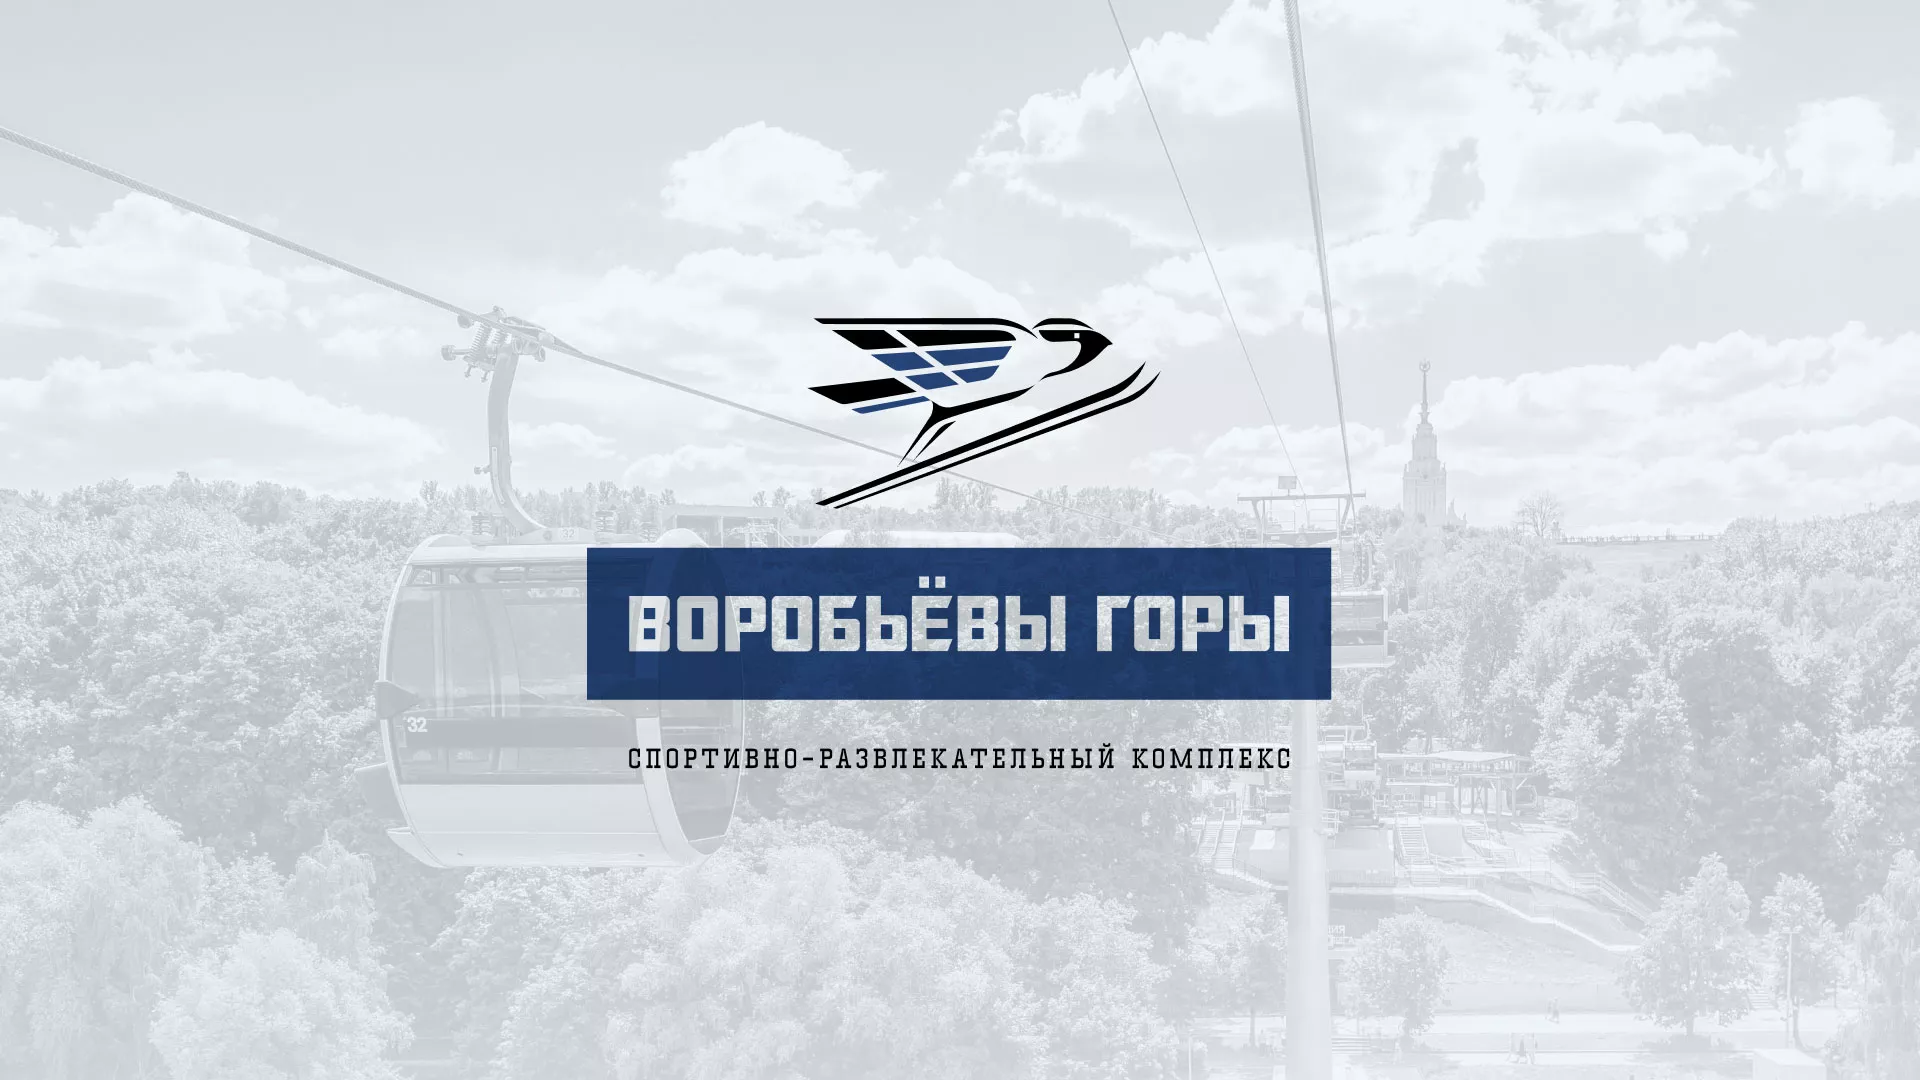 Разработка сайта в Бокситогорске для спортивно-развлекательного комплекса «Воробьёвы горы»